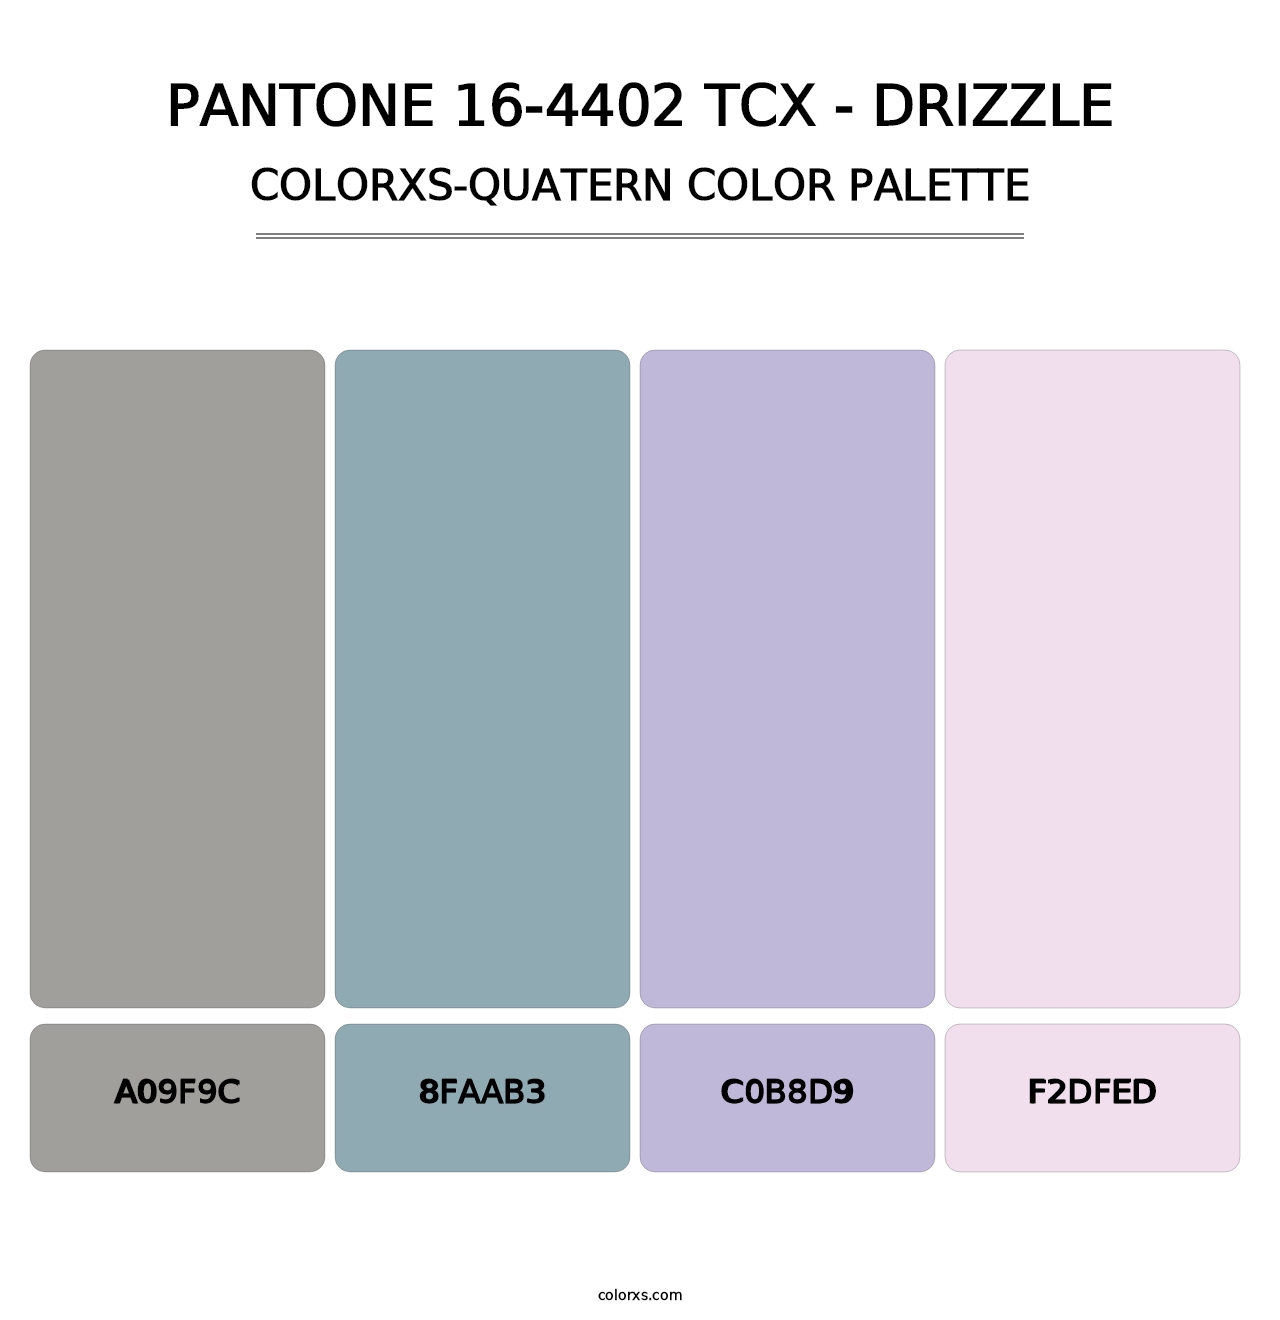 PANTONE 16-4402 TCX - Drizzle - Colorxs Quatern Palette